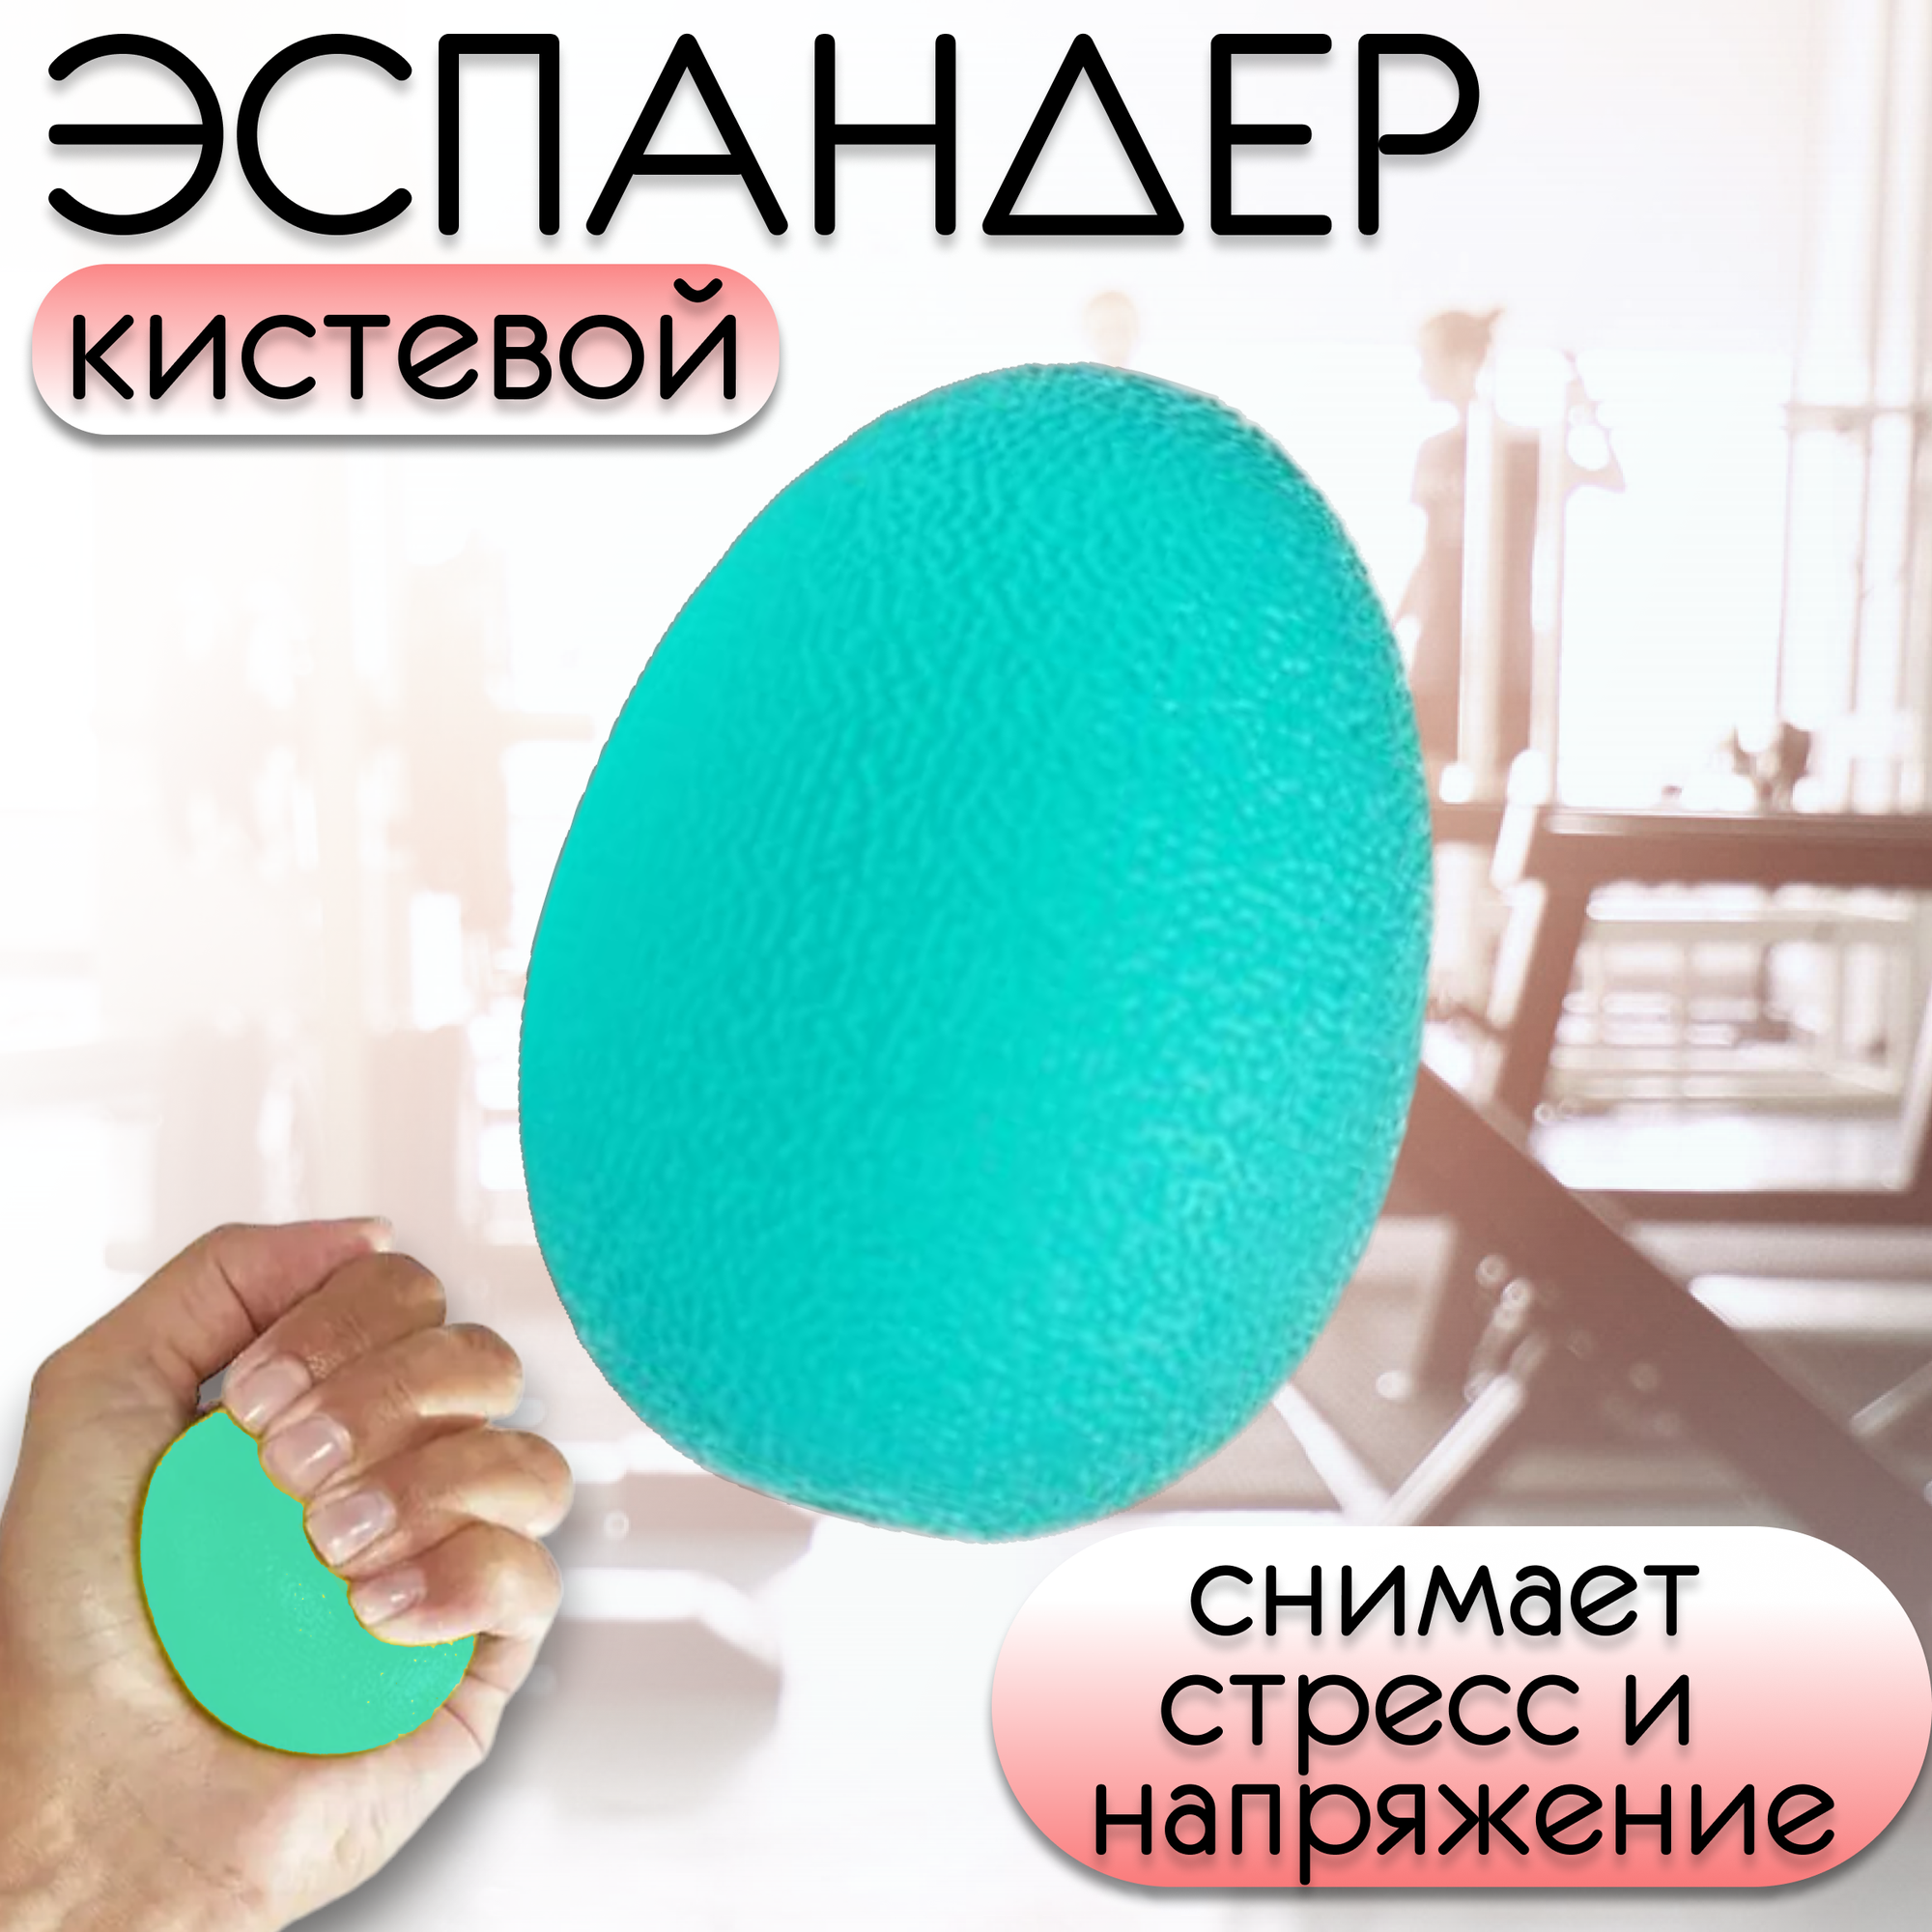 Яйцо силиконовое, фитнес-тренажер для пальцев рук, цвет зеленый